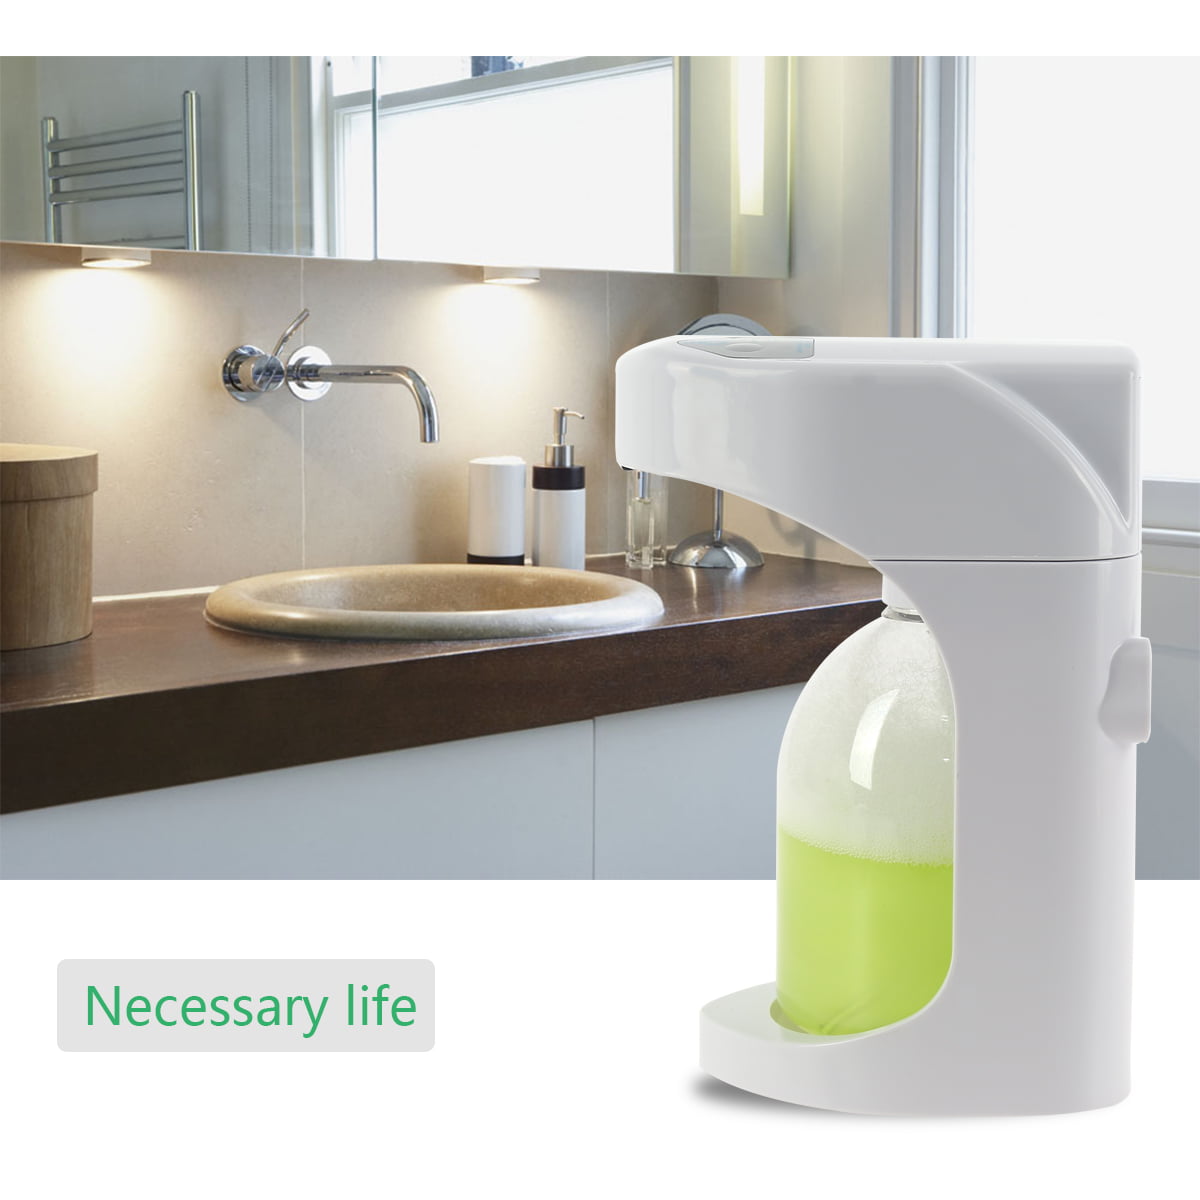 Details about  / New Touchless Soap Foam Dispenser Home Deco Kitchen Bathroom Men Women Fashion